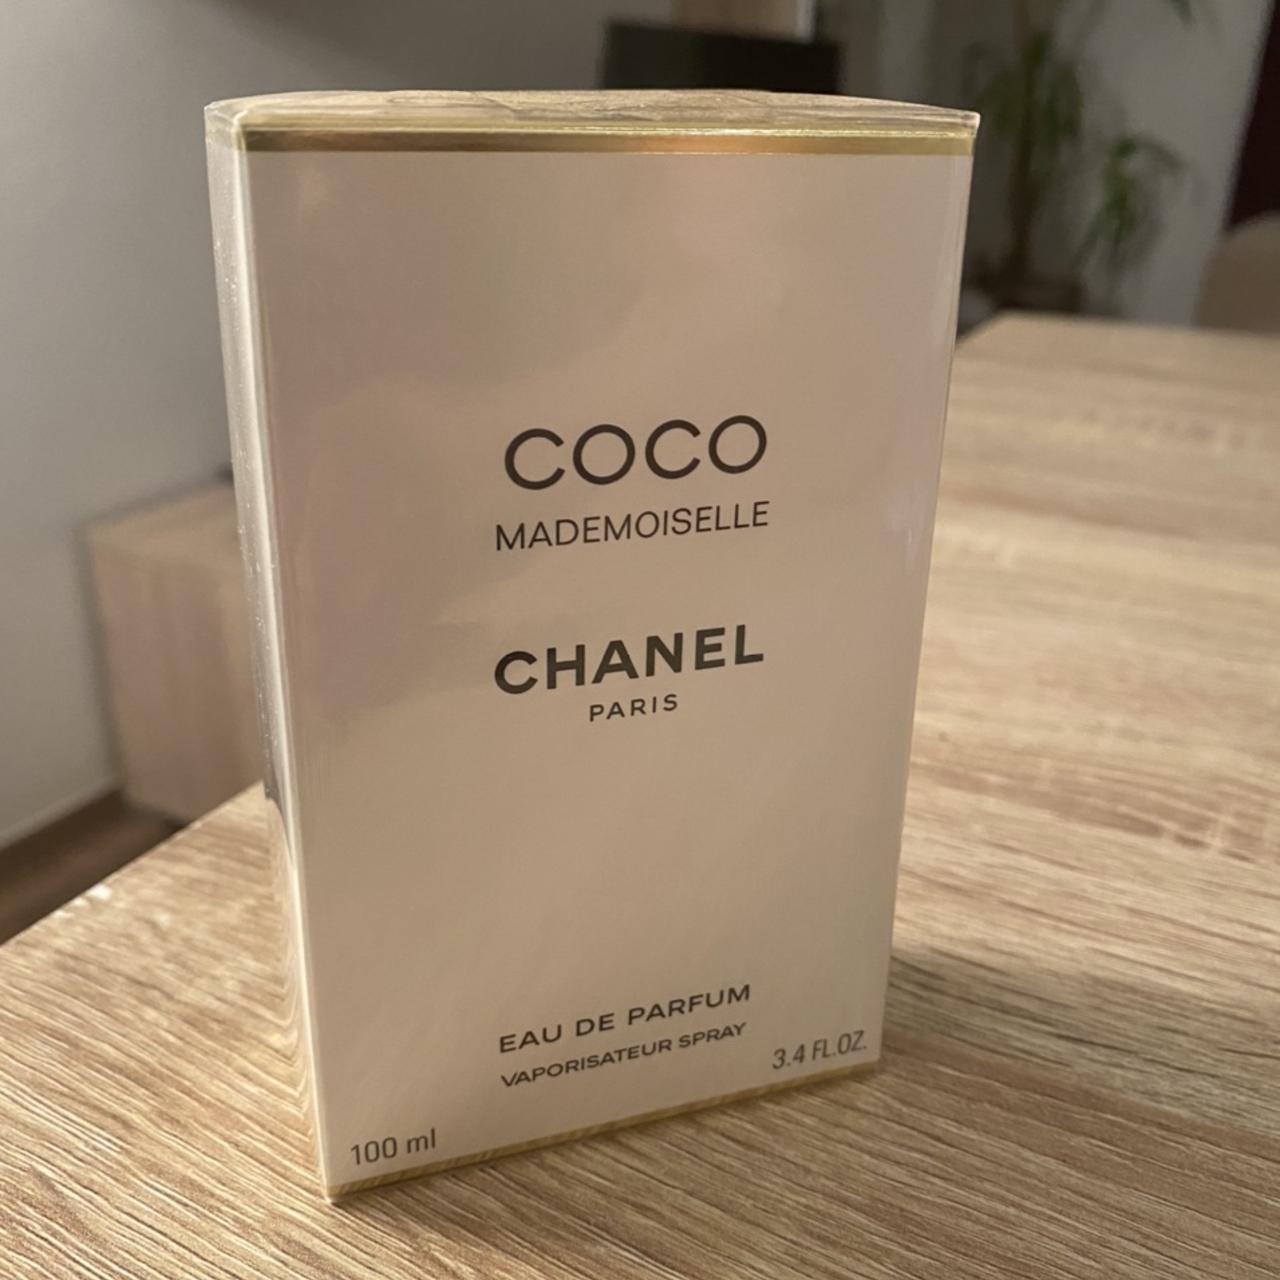 Coco Mademoiselle Chanel Paris EAU DE PARFUM Brand - Depop